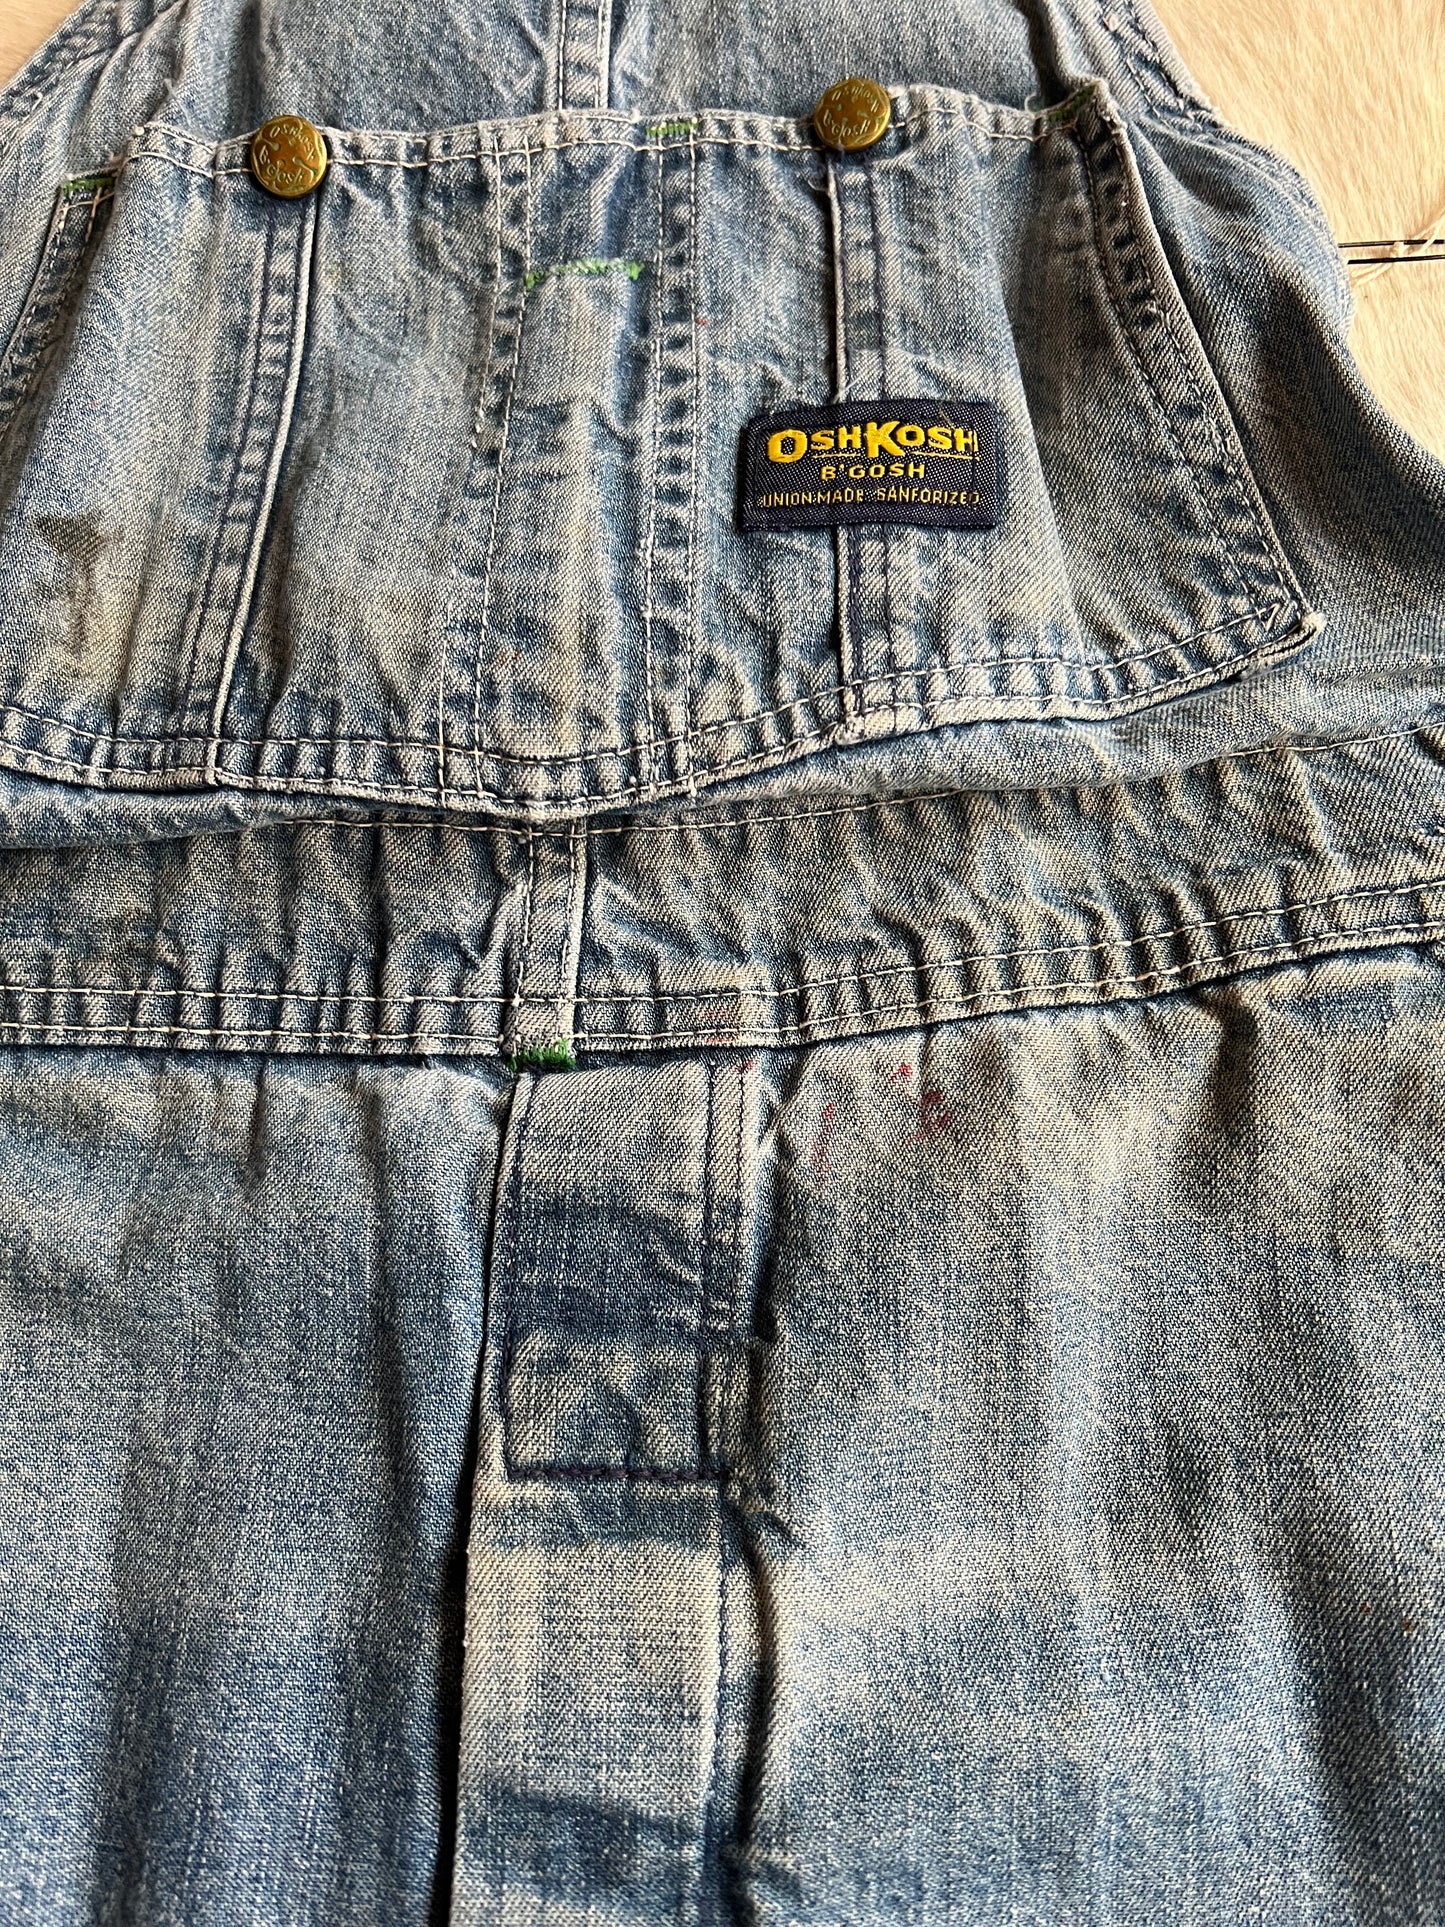 1980s Oshkosh worn in overalls